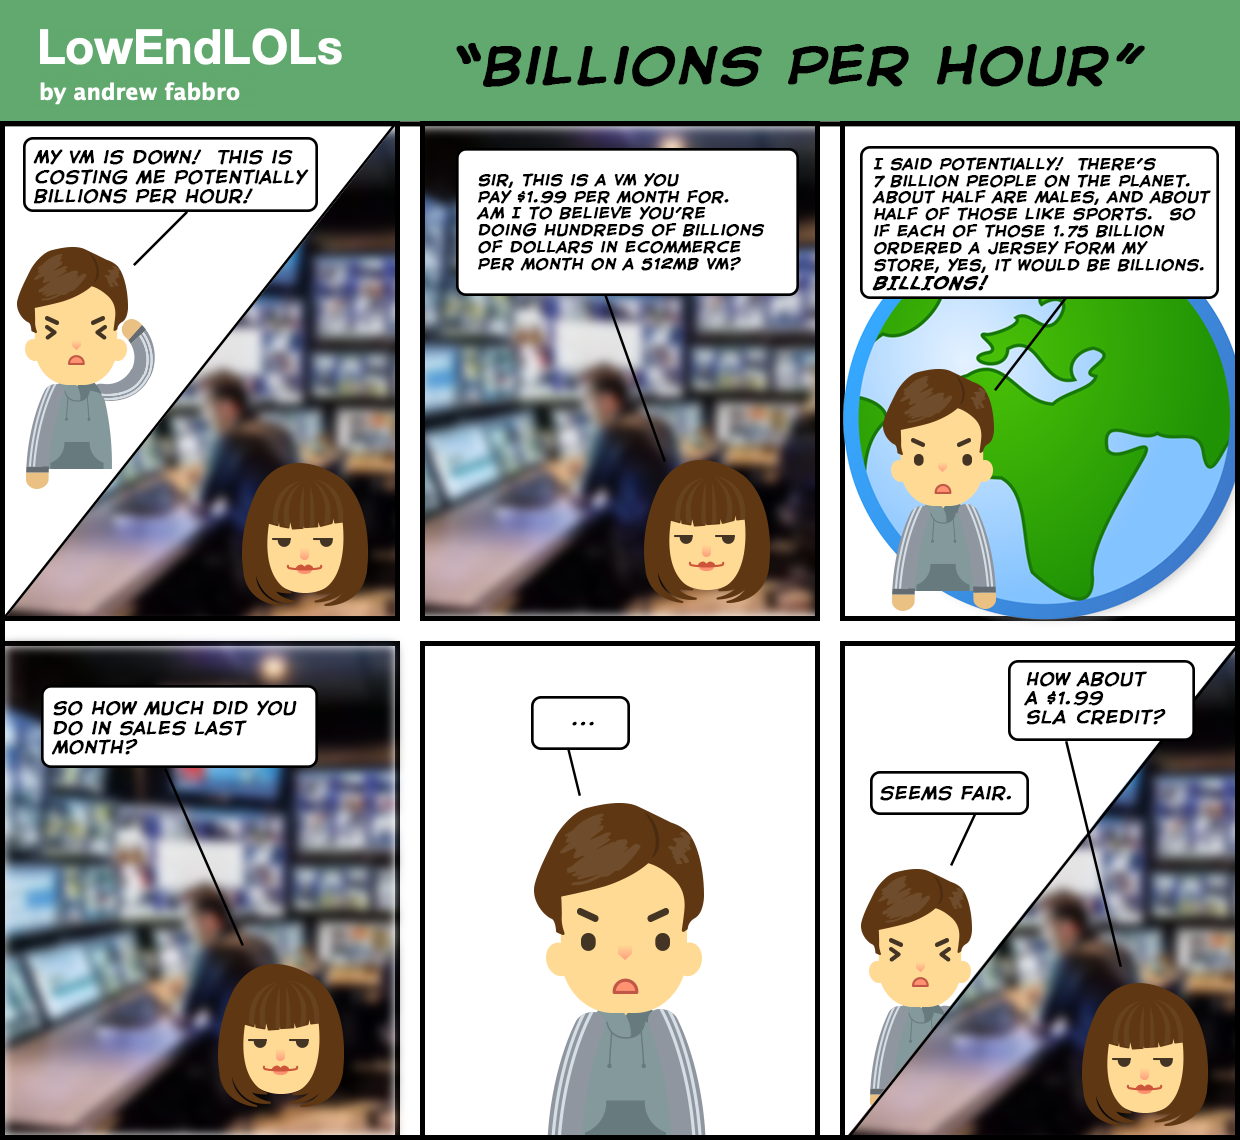 LowEndLOLs billions per hour